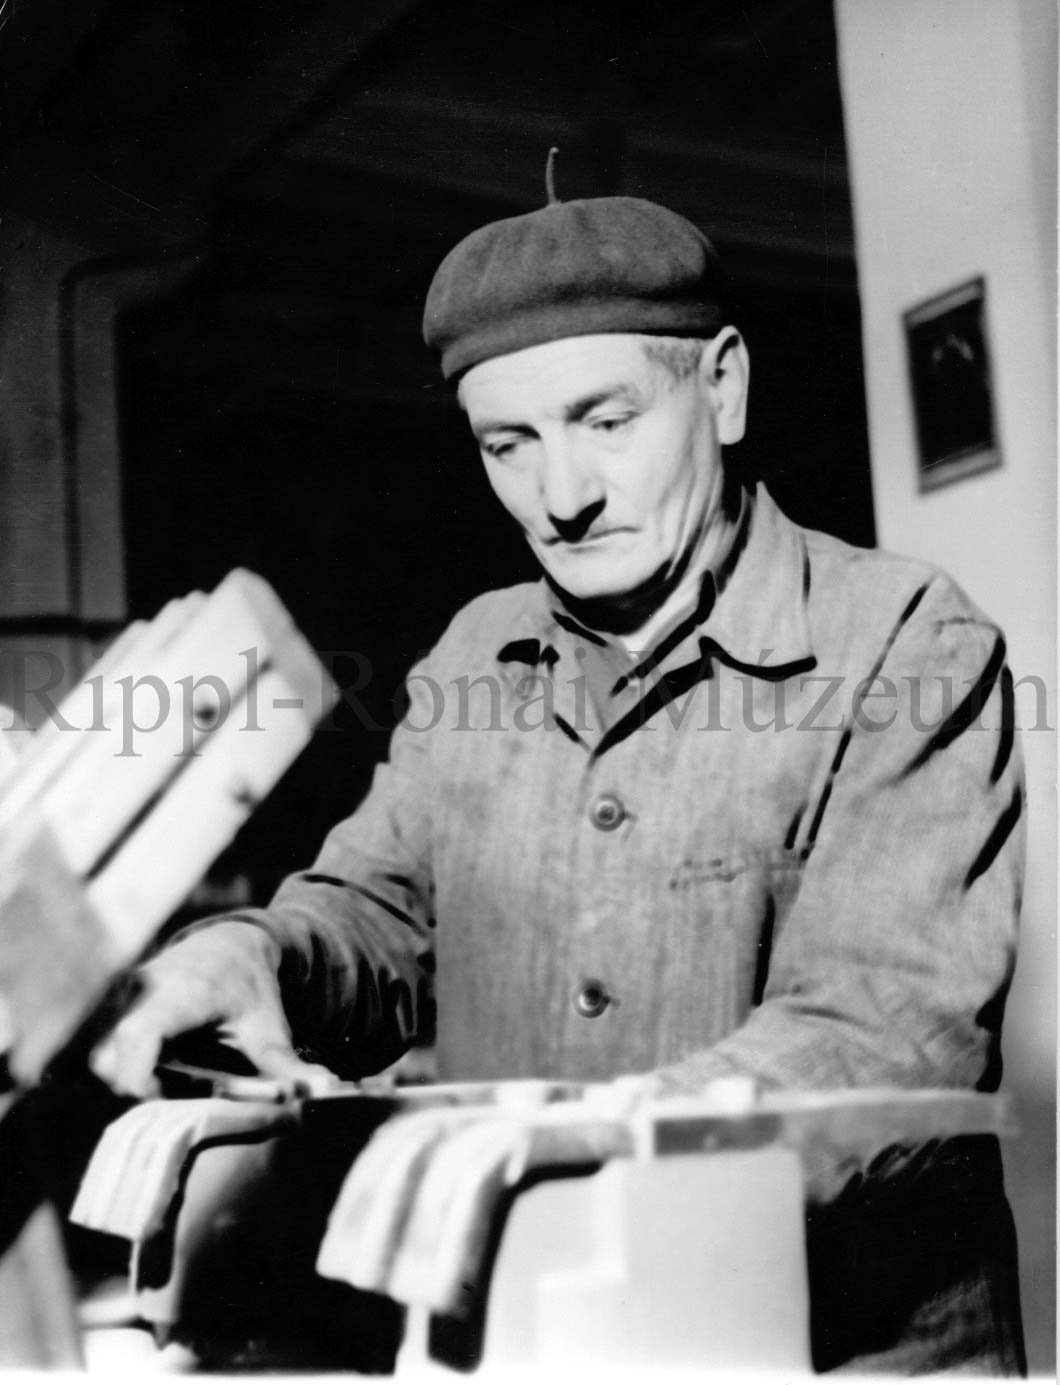 Komga József, a TRANSZVILL szereldéjének munkása (Rippl-Rónai Múzeum CC BY-NC-SA)